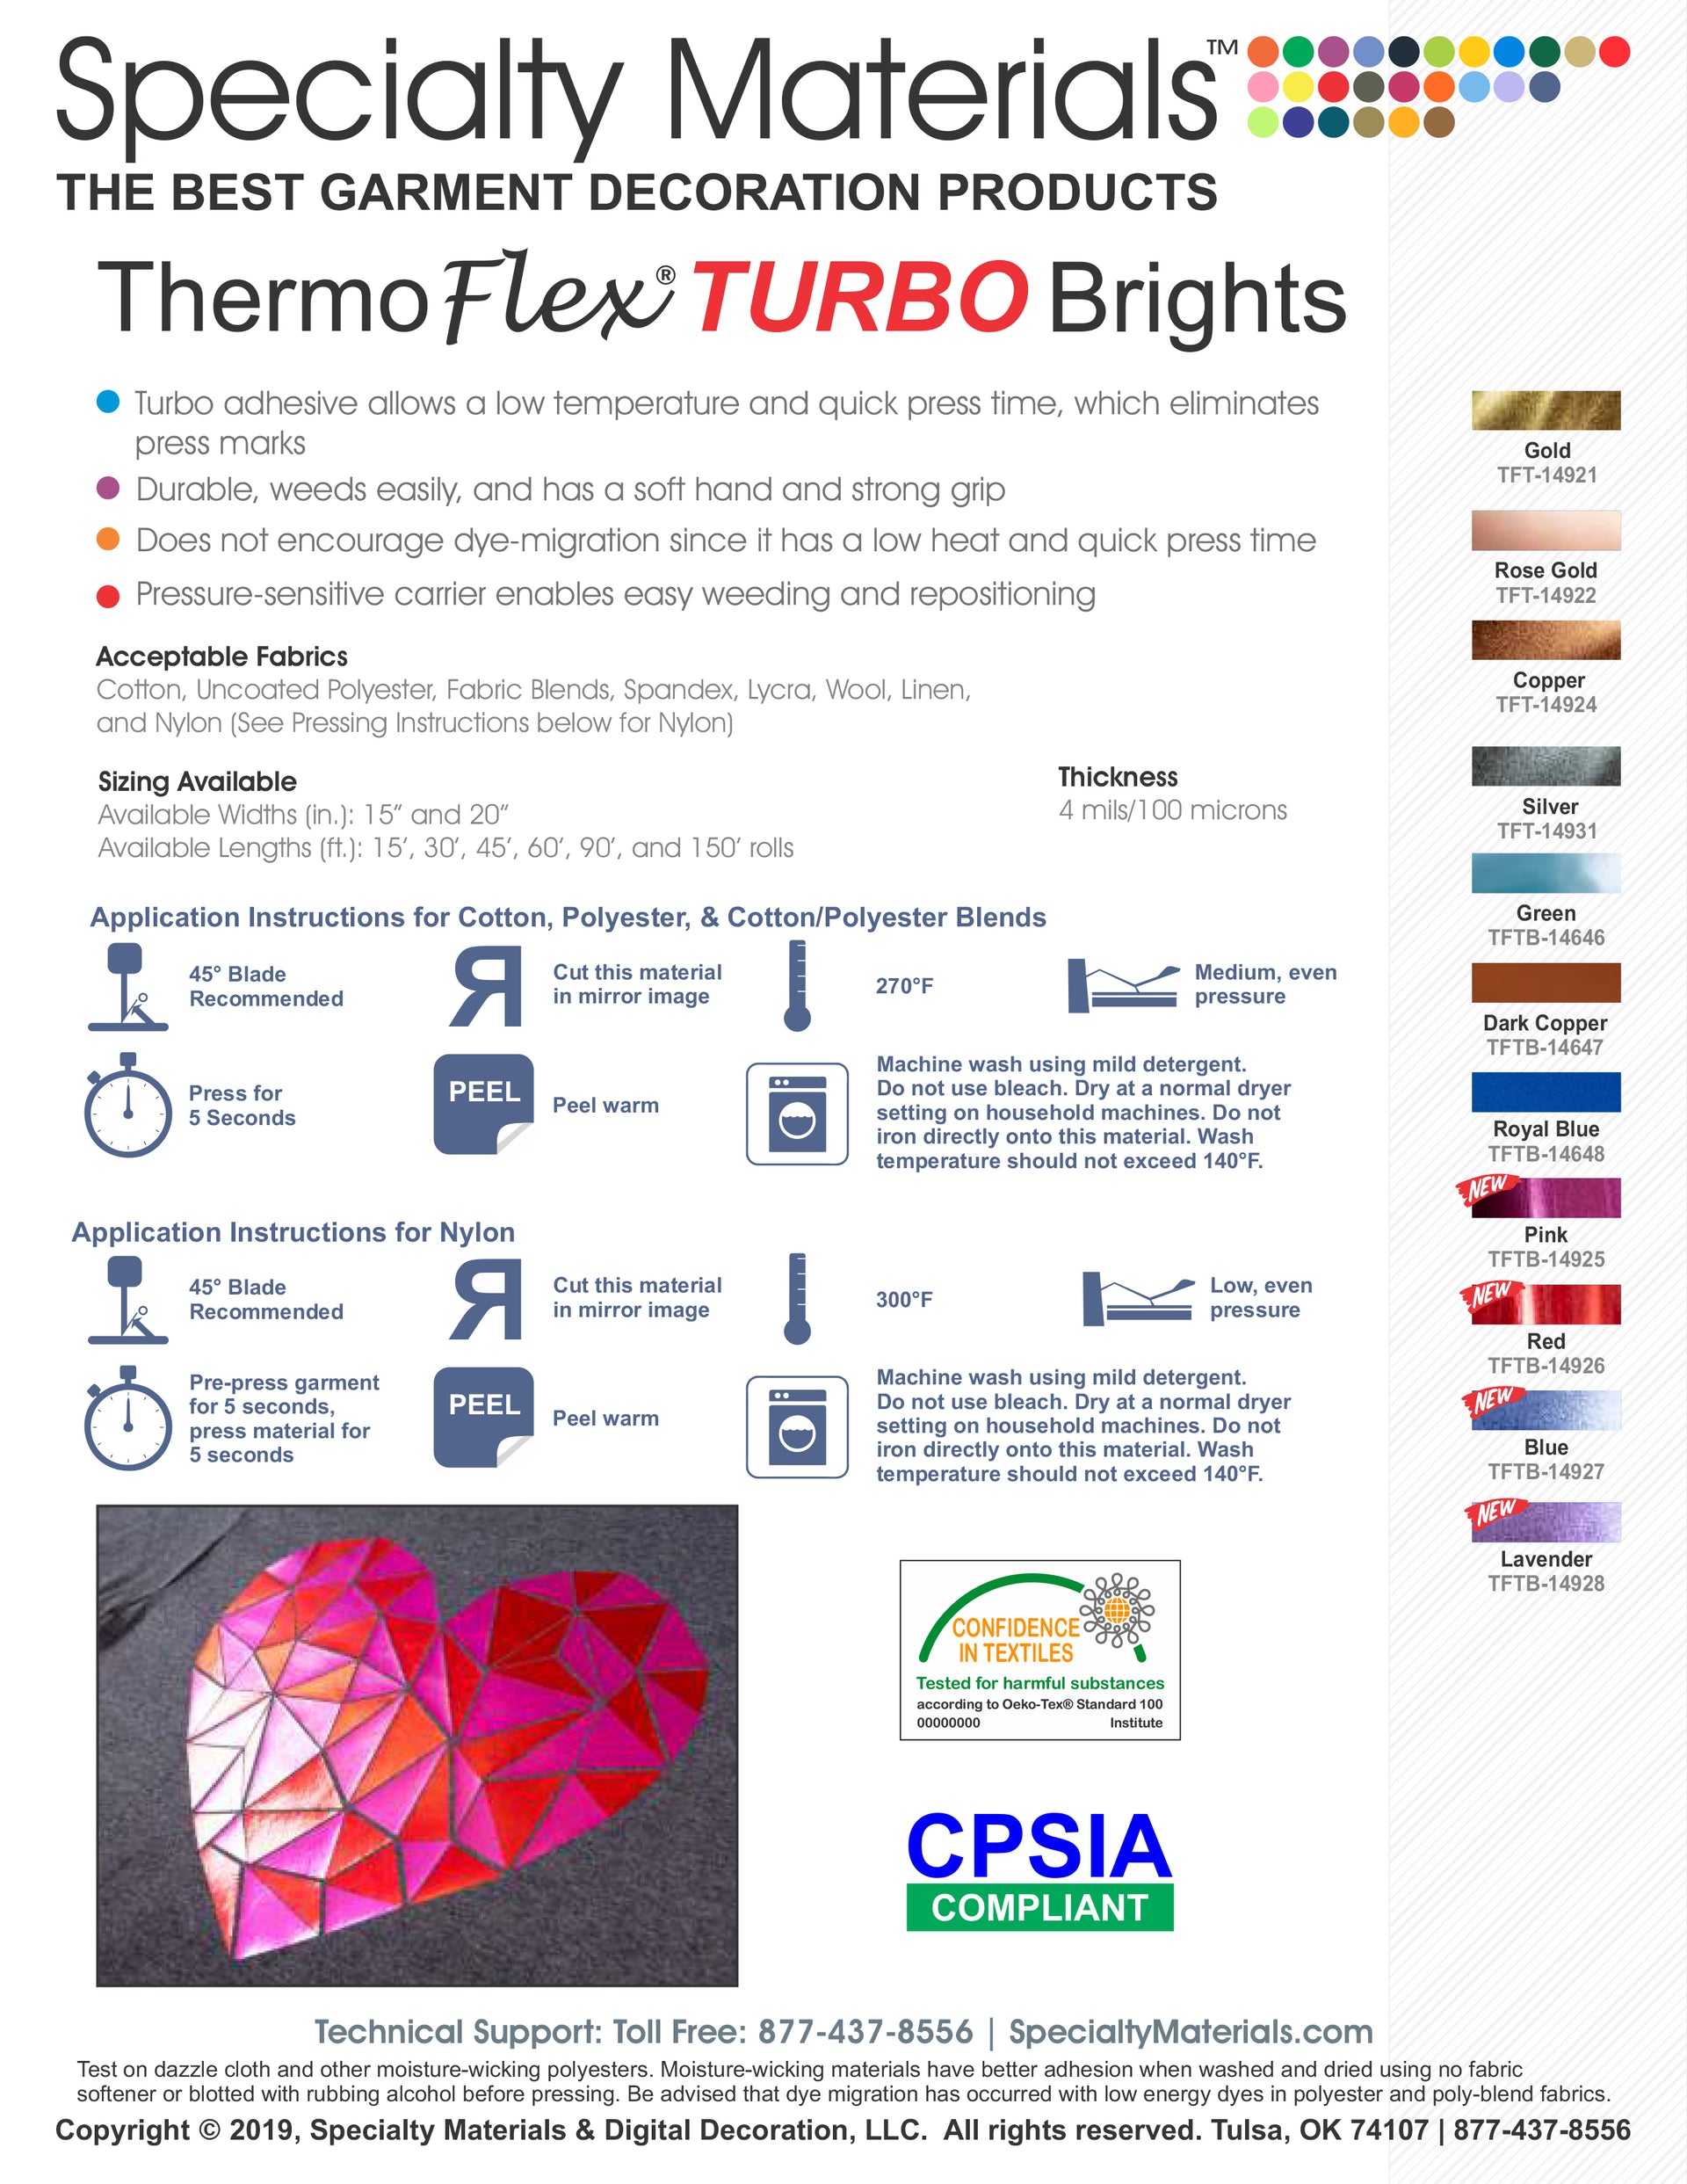 Thermoflex Turbo Brights